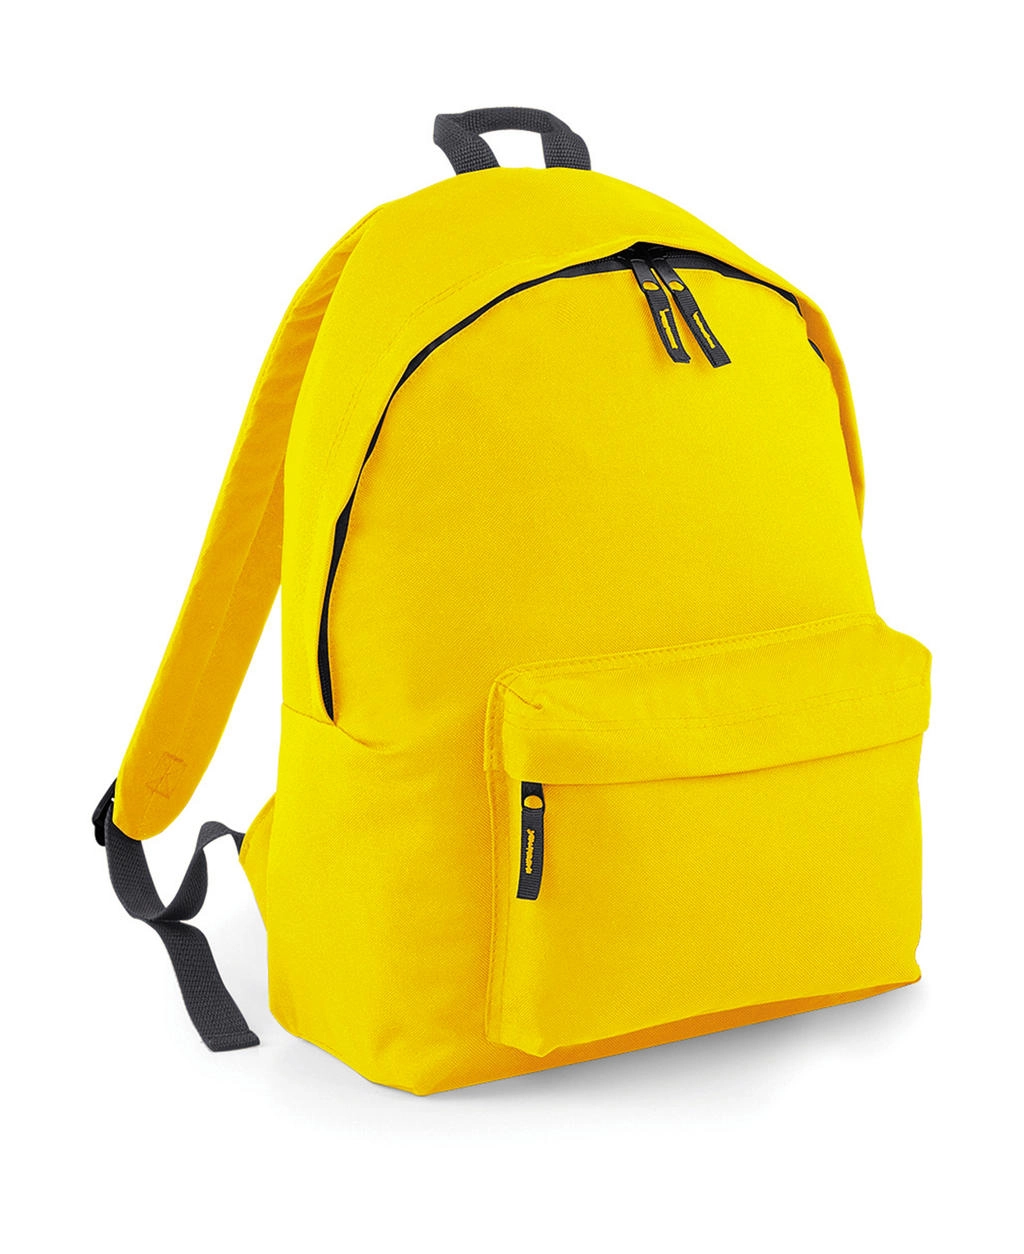 Original Fashion Backpack zum Besticken und Bedrucken in der Farbe Yellow/Graphite Grey mit Ihren Logo, Schriftzug oder Motiv.